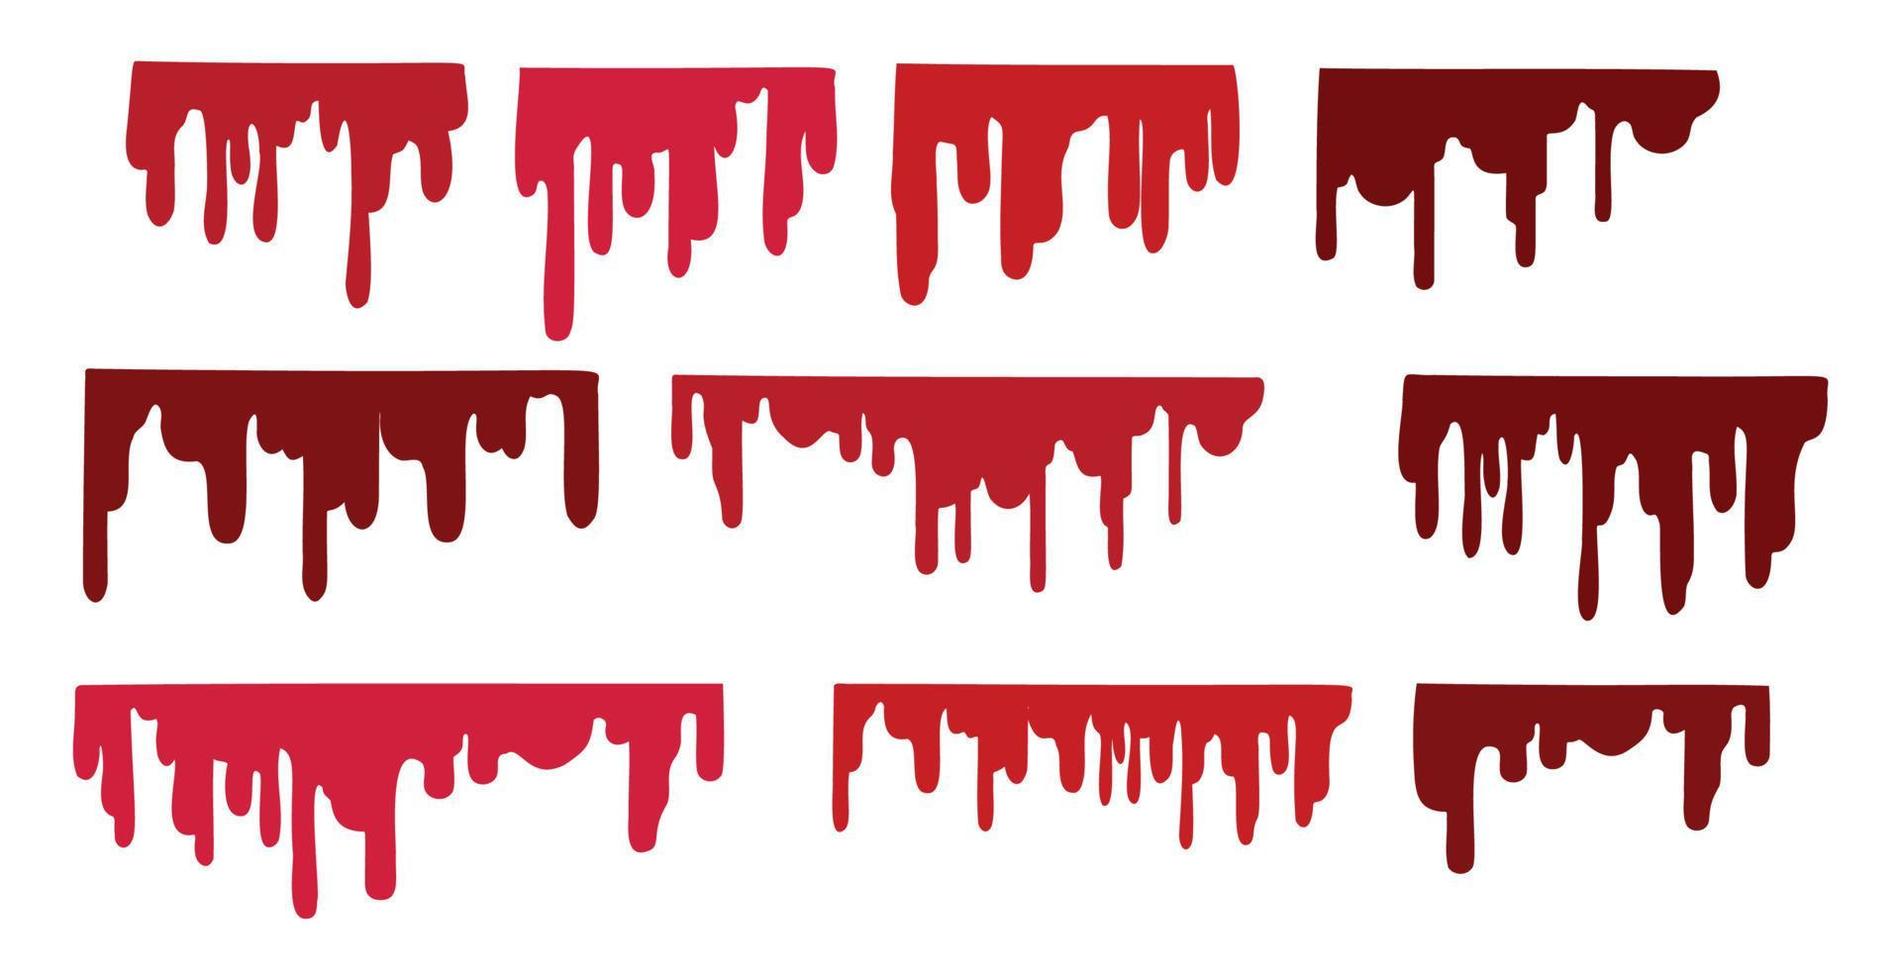 uppsättning av 5 färger av blod, ränder av blod på en vit bakgrund - vektor